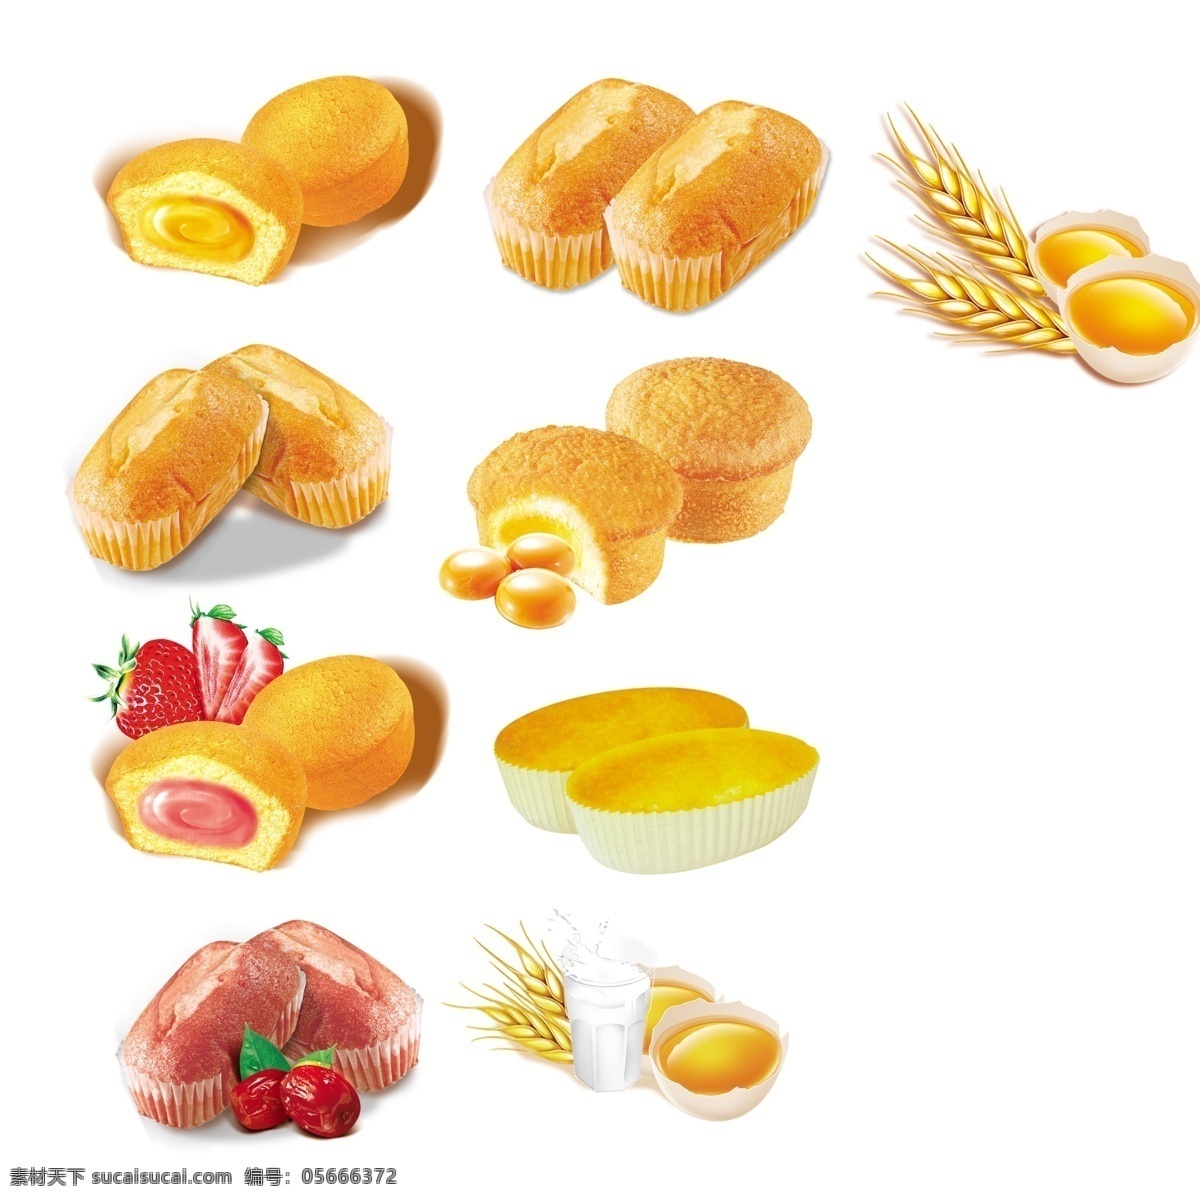 面包 蛋黄派 面包设计素材 源文件 蛋黄派素材 平面设计素材 分层